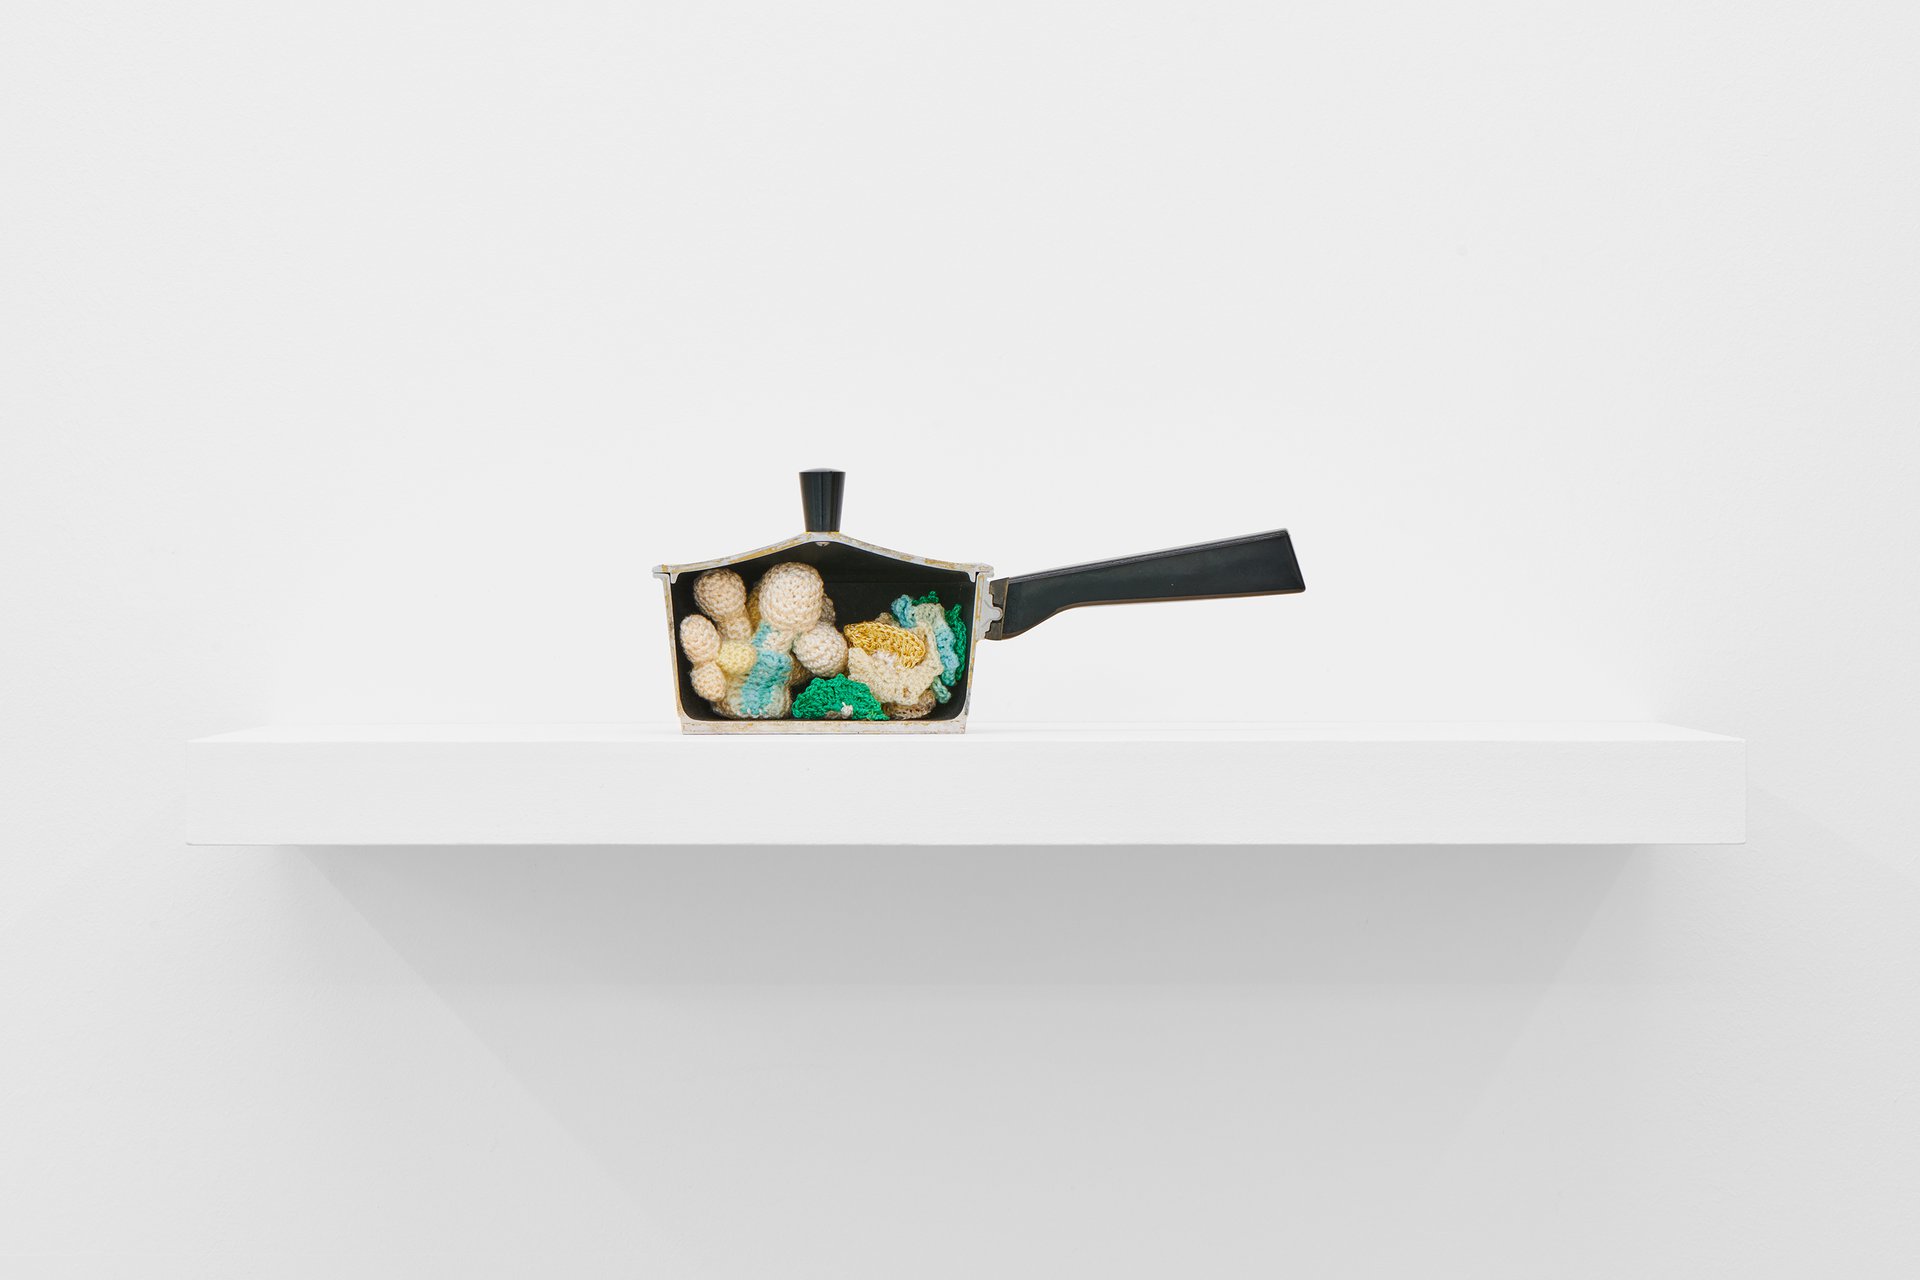 Su Richardson, Half Pan and Cauliflower, 1976, Installationsansicht, Bonner Kunstverein, 2022. Courtesy die Künstlerin und Richard Saltoun Gallery, London und Rom. Foto: Mareike Tocha.